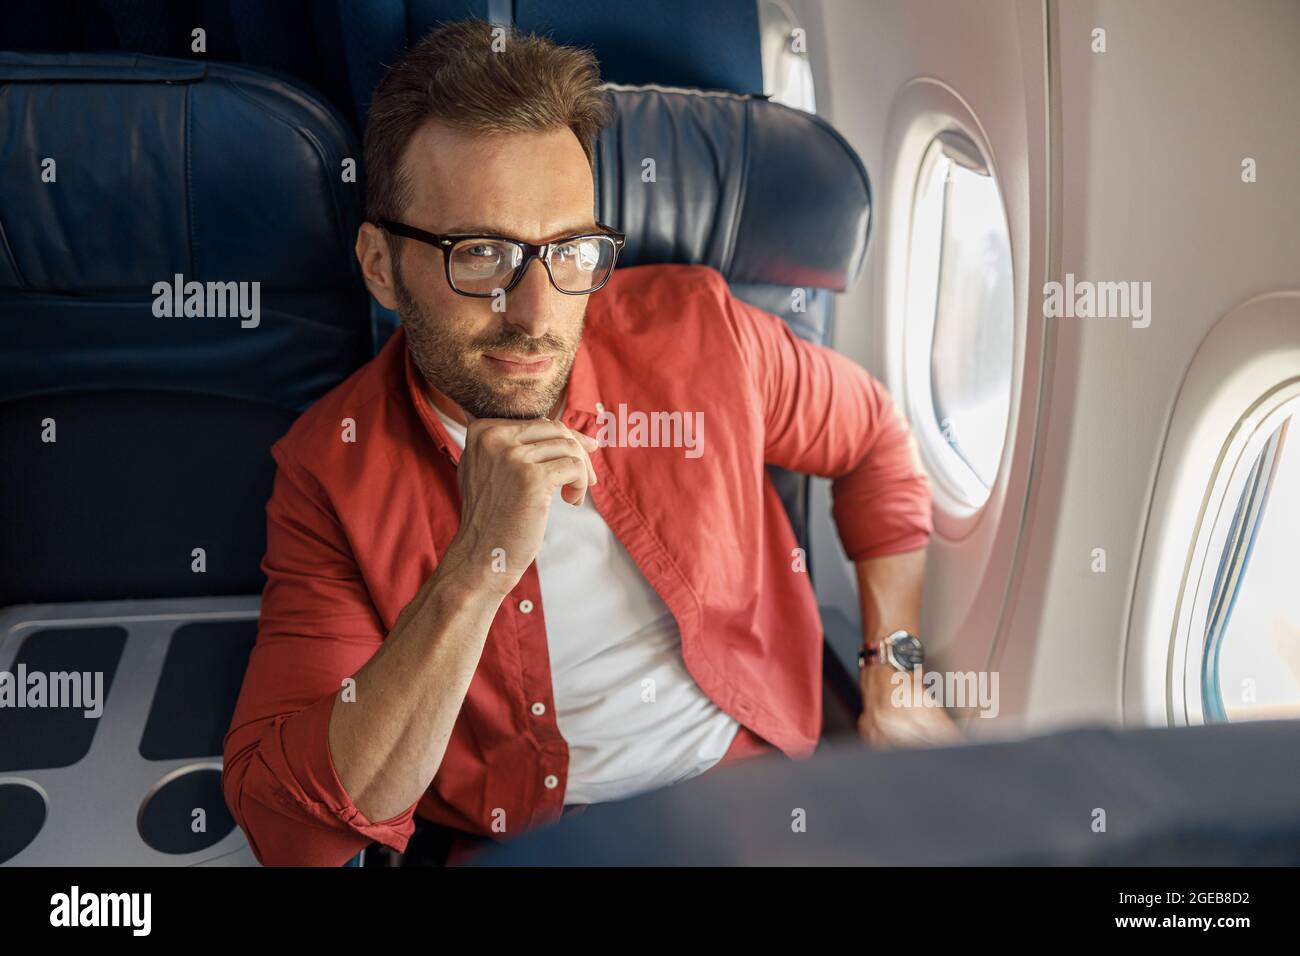 Afrikanische amerikanische Geschäftsmann mit schlafbrille sitzen in der  Nähe von Gadgets in privaten Flugzeug Stockfotografie - Alamy